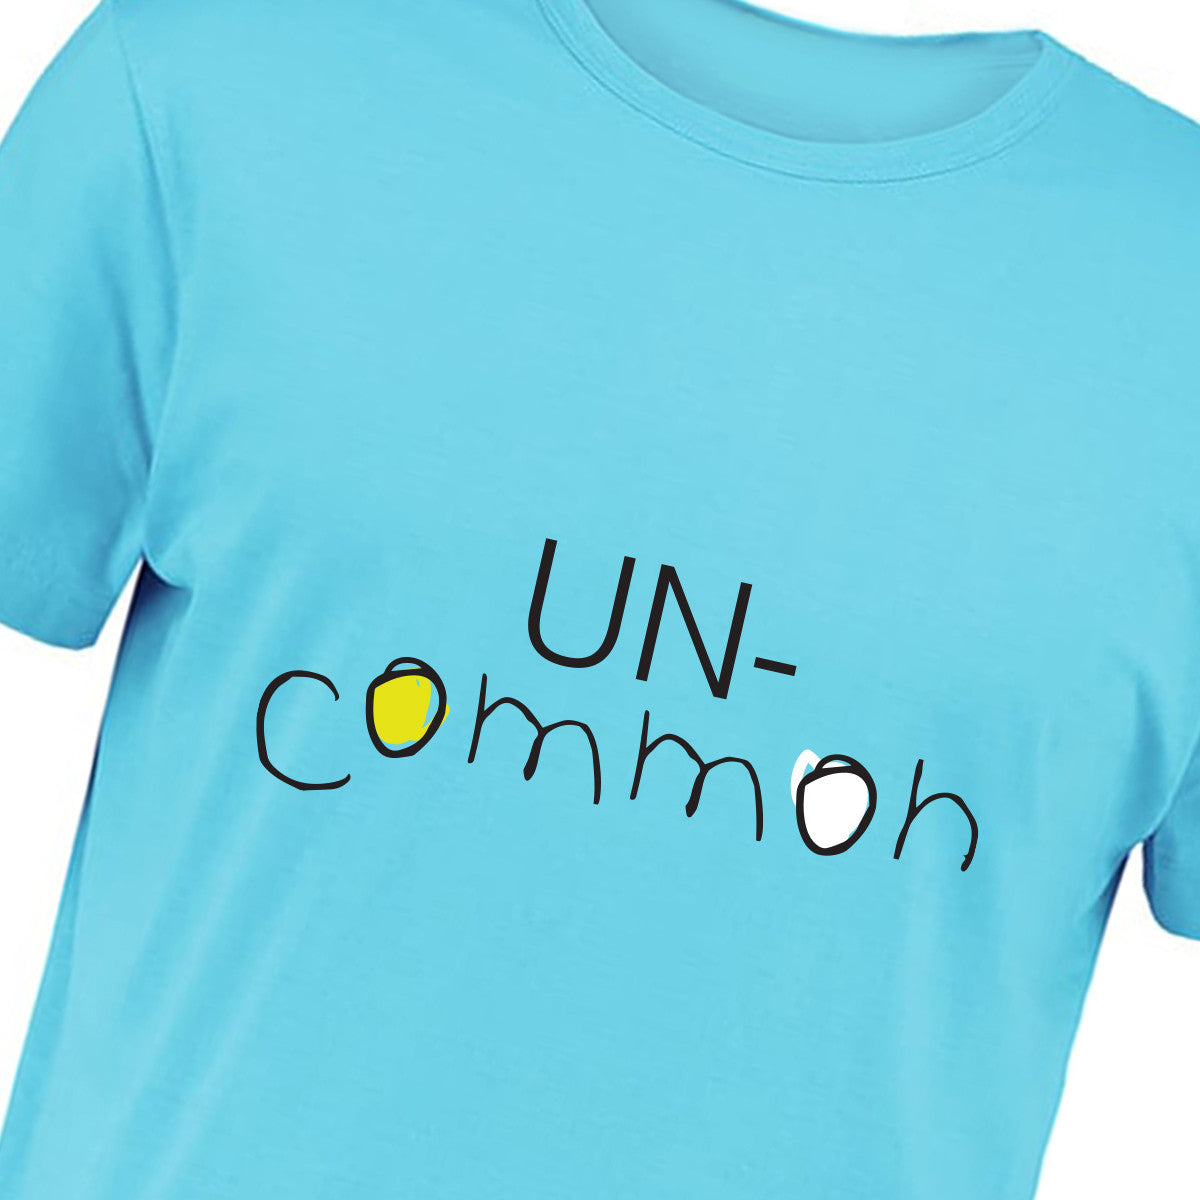 Uncommon Cyan T-shirt